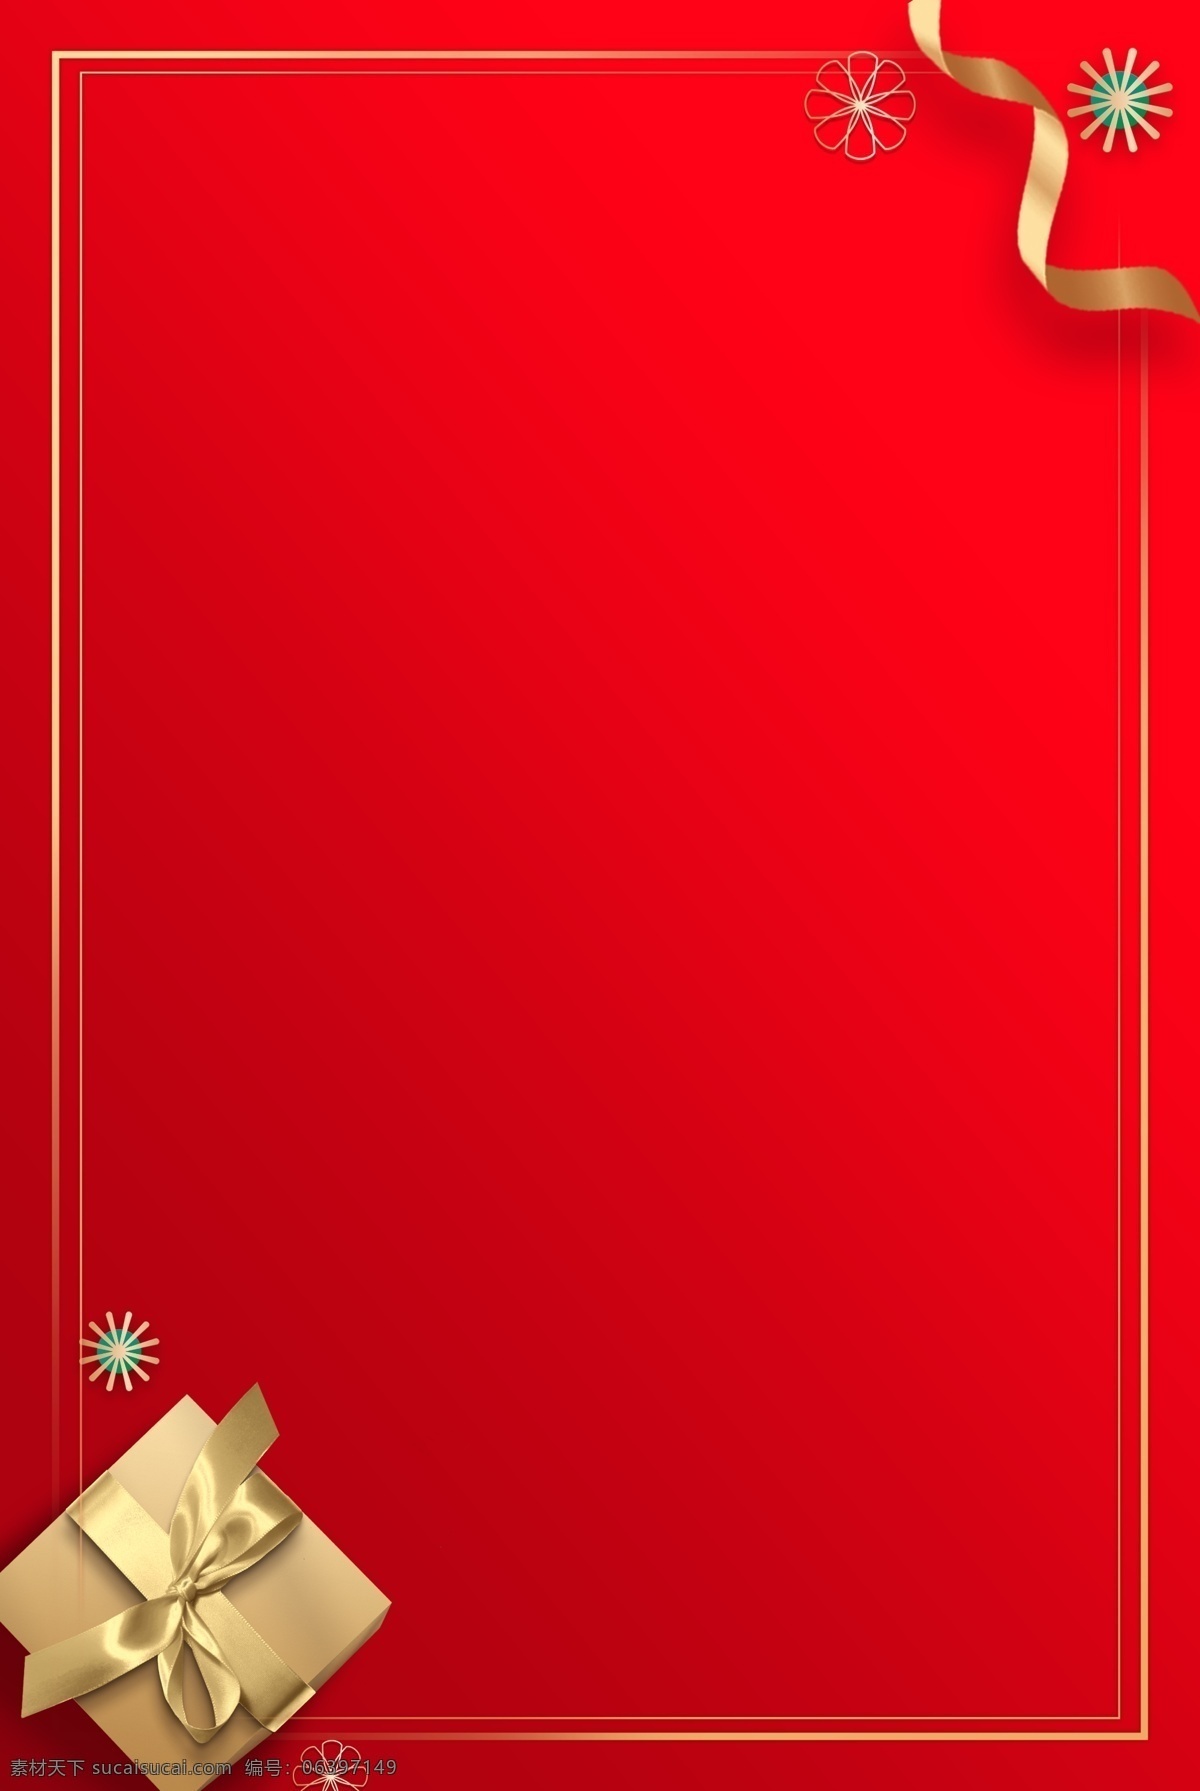 红色 礼盒 节日 背景 海报 素材图片 分层